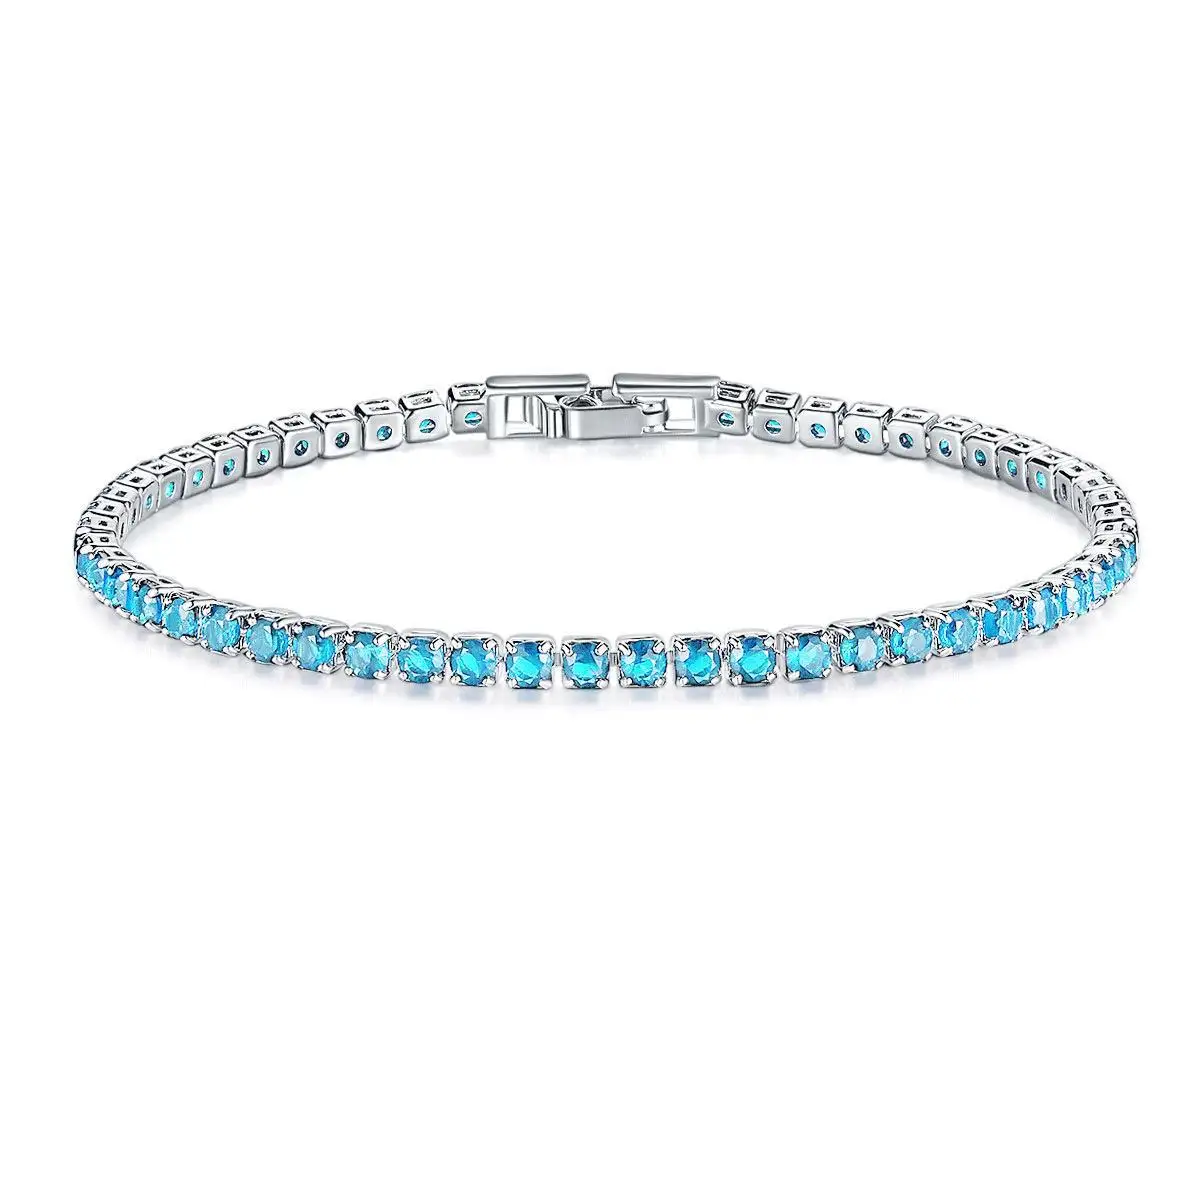 GC220606 Luxury Colorful Zircon 3mm tennis Bracelet Jewelry Full Cubic Zirconia Bracelets for Women